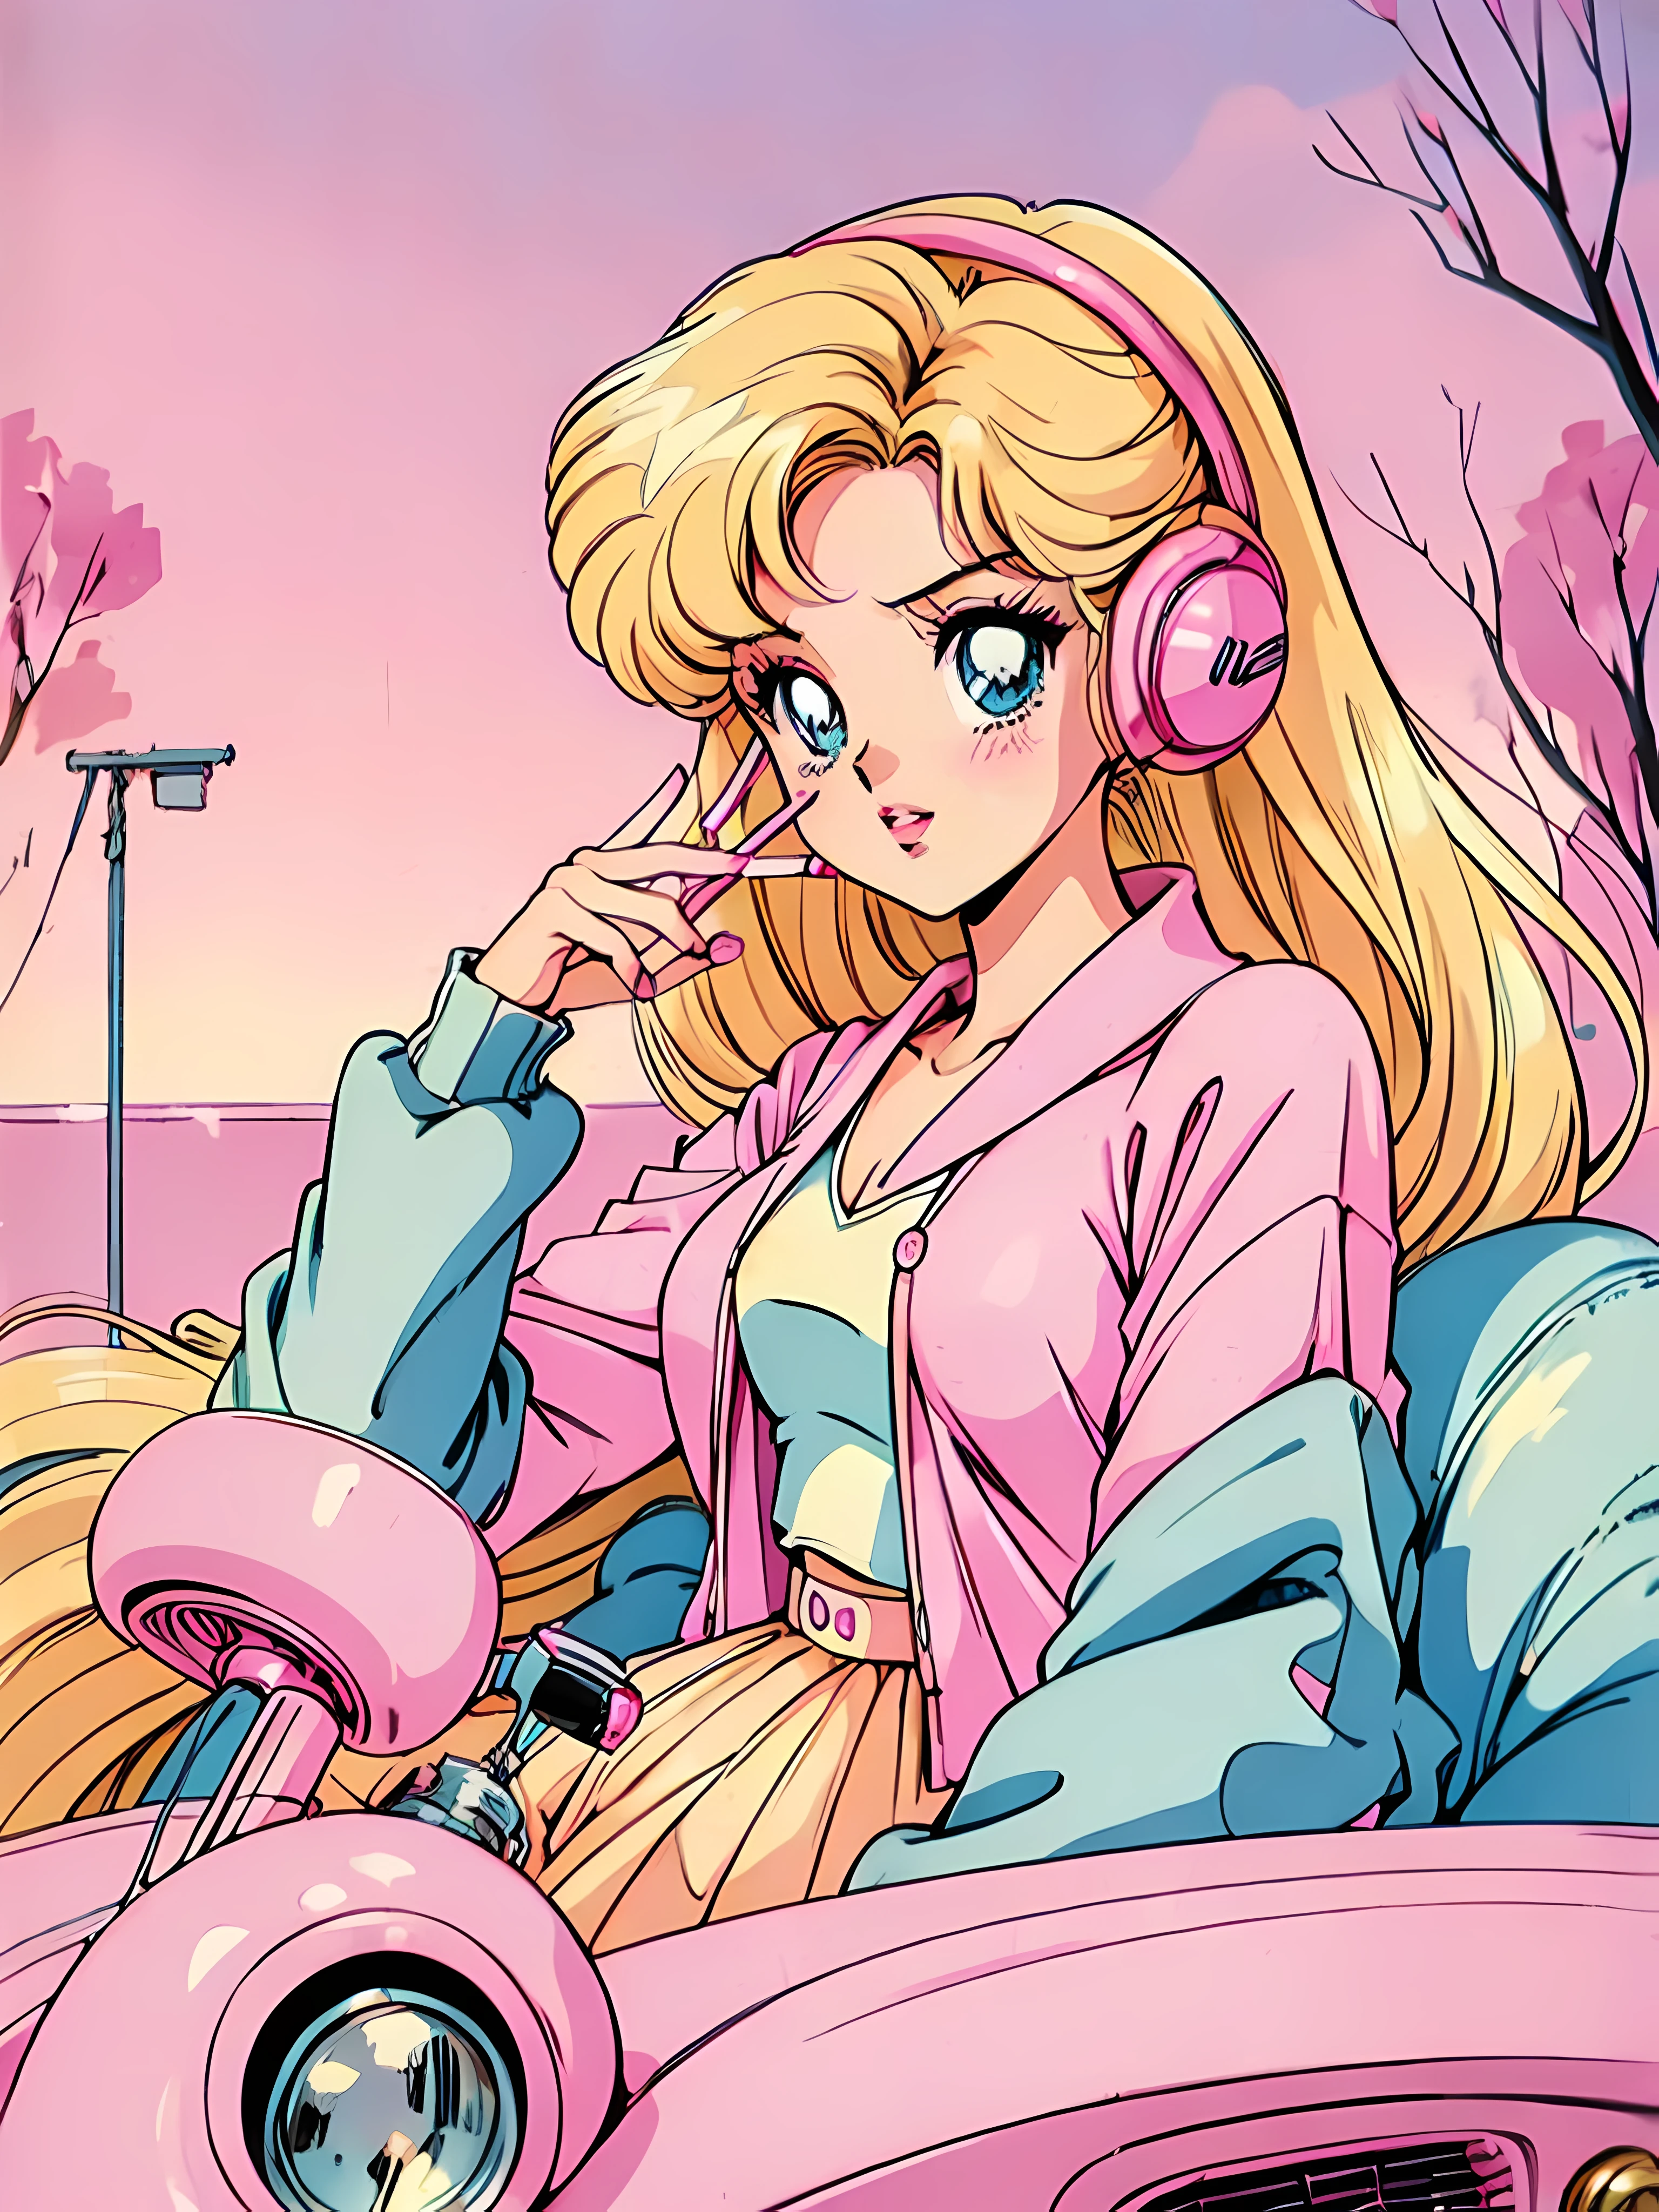 (金髮芭比:1.2),(粉紅色服裝:1.1),(90 年代復古:1.1),(浪漫動漫風格:1.3), 坐在粉紅色的車裡, 粉色開襟衫, 黑髮, 唇彩, 香菸